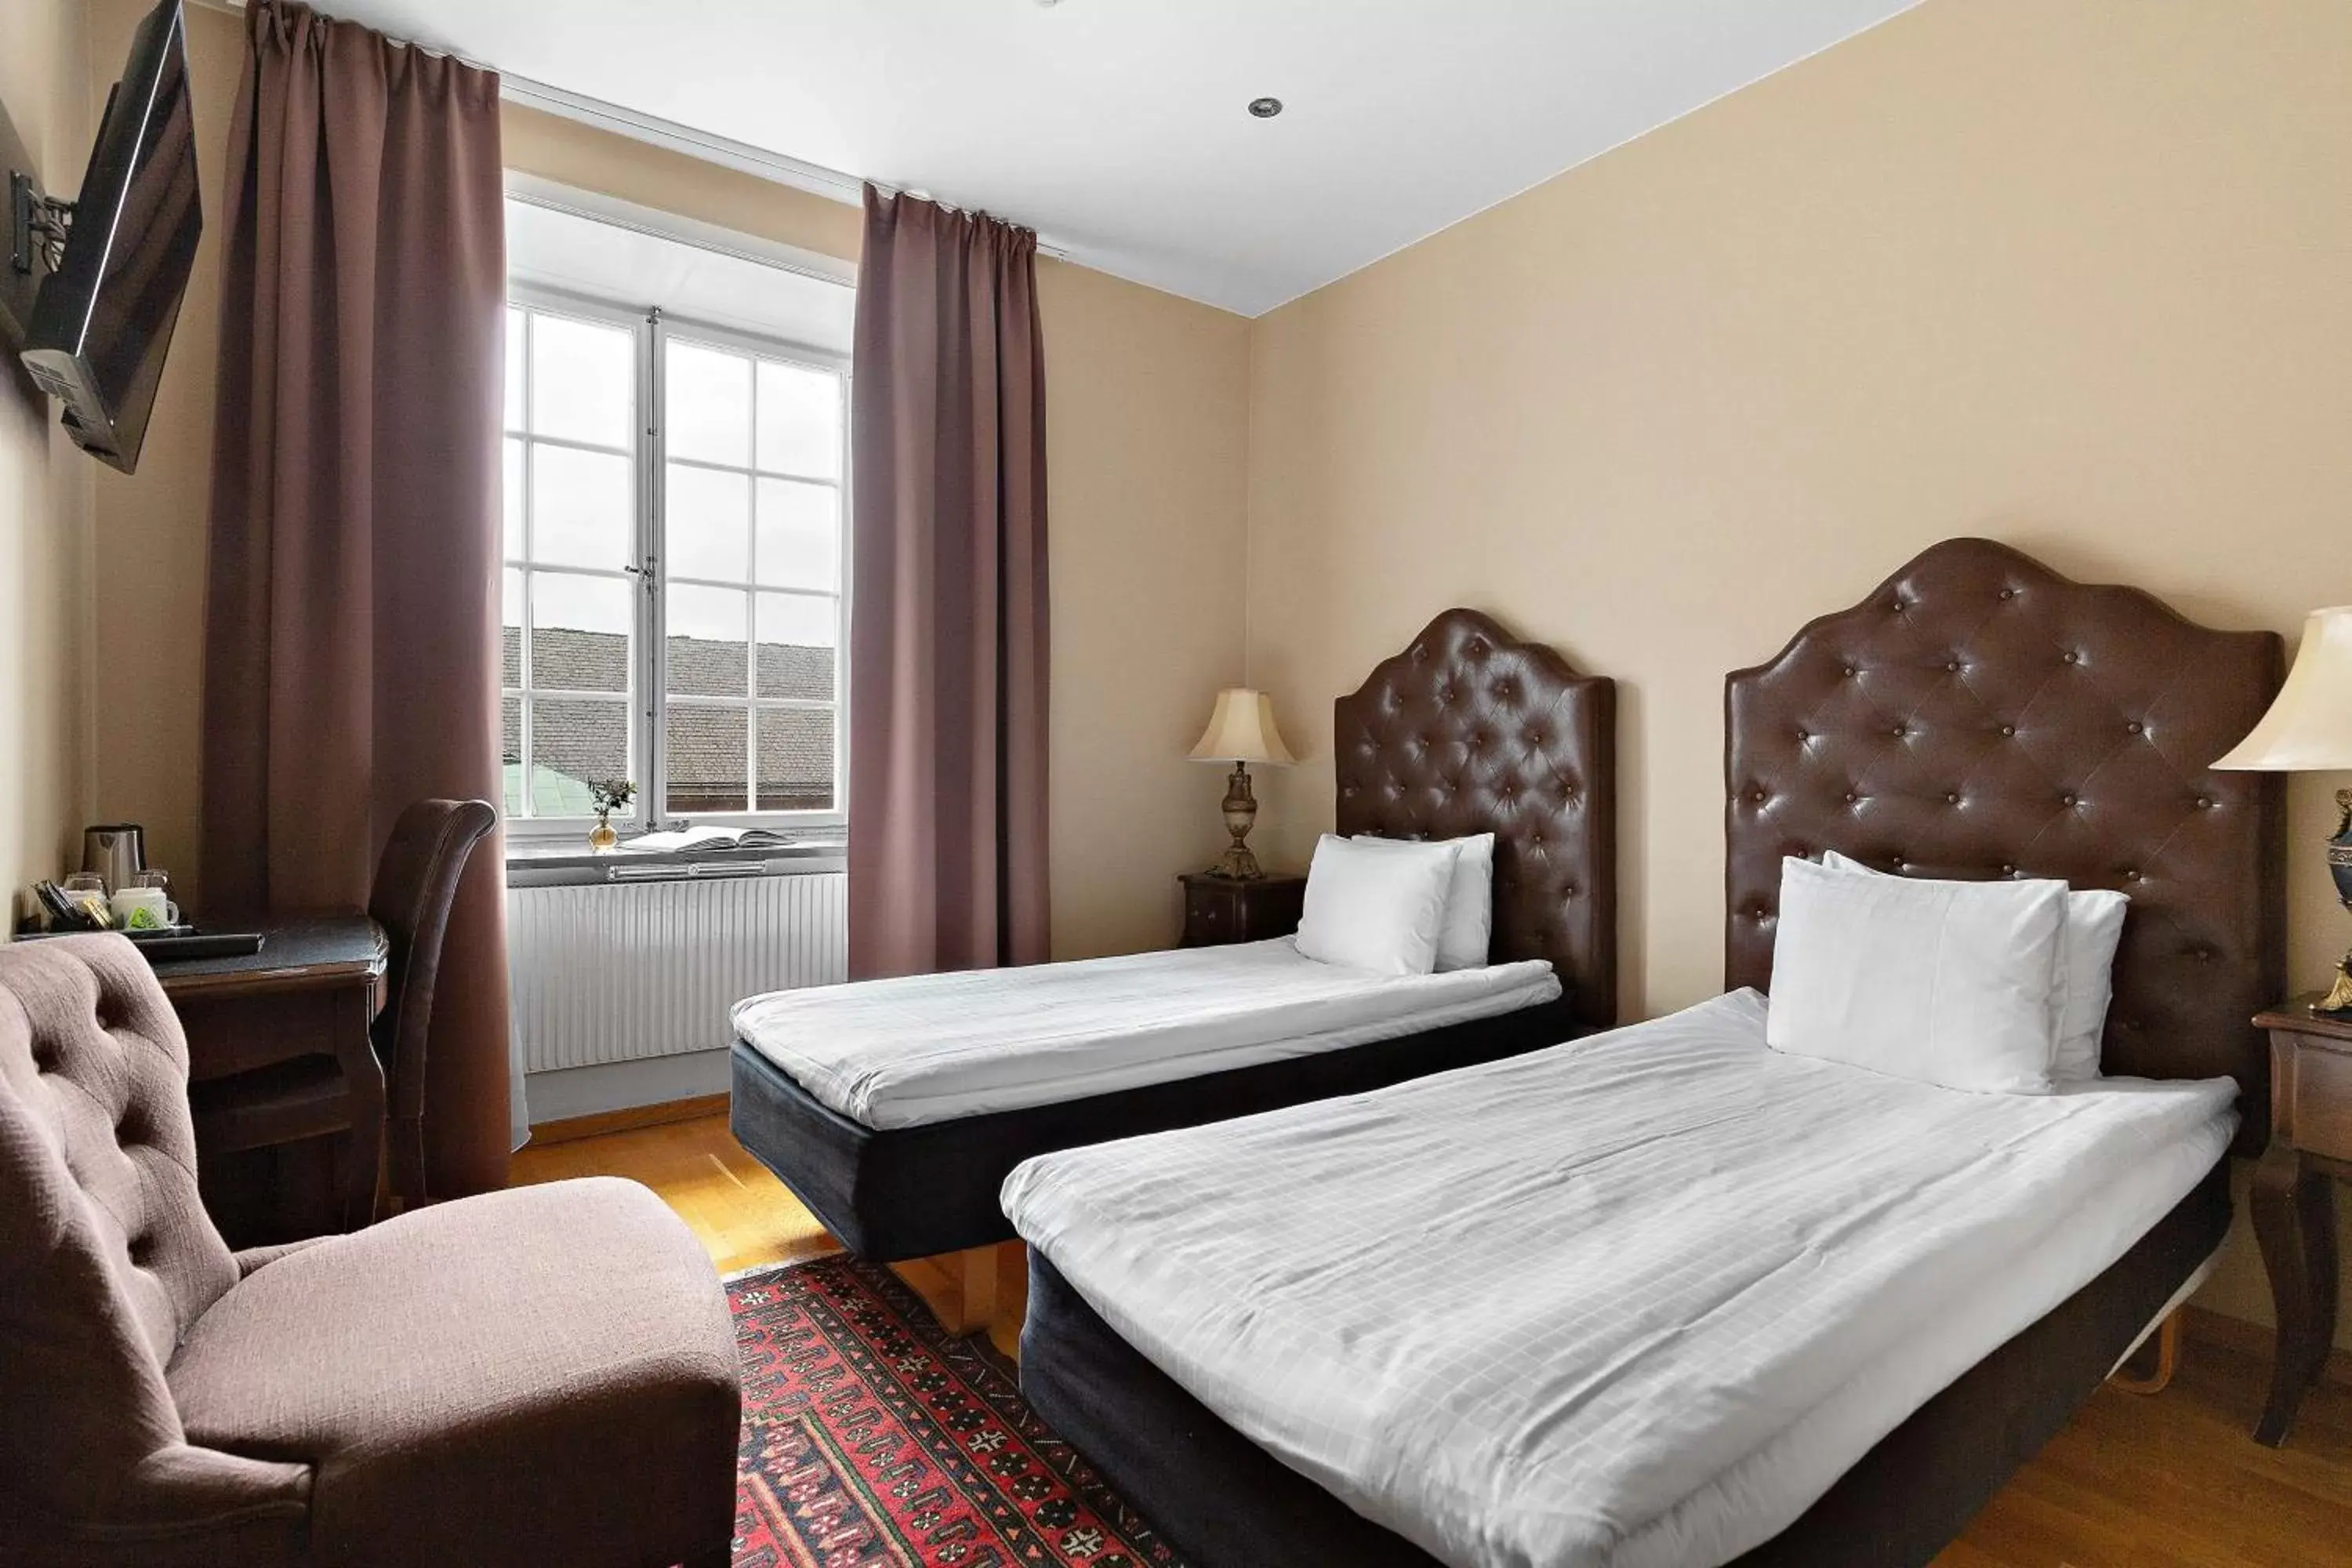 Bedroom, Bed in Best Western Hotel Karlaplan